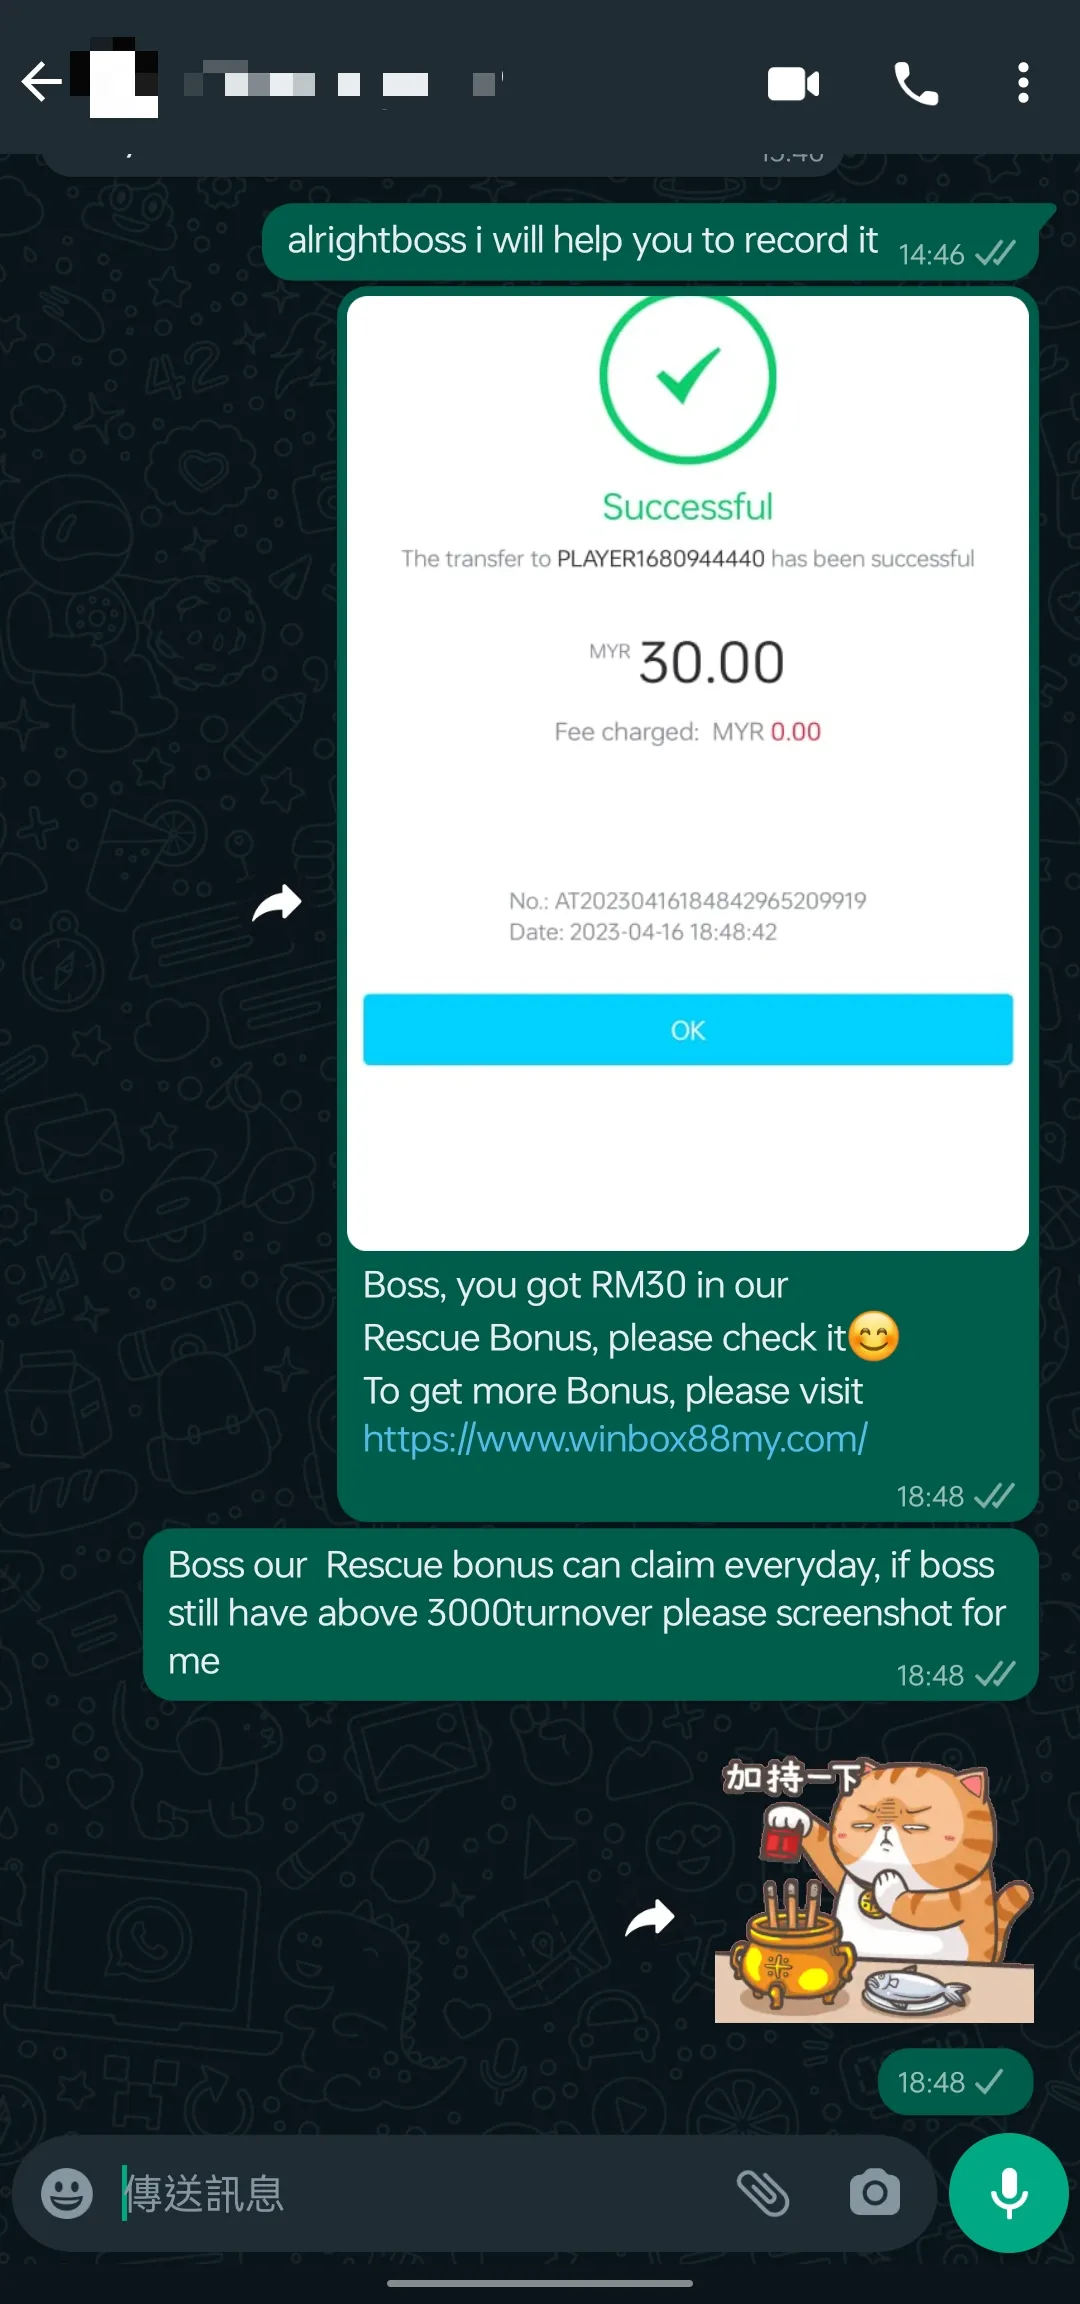 winbox rescue bonus past winner screenshot 74